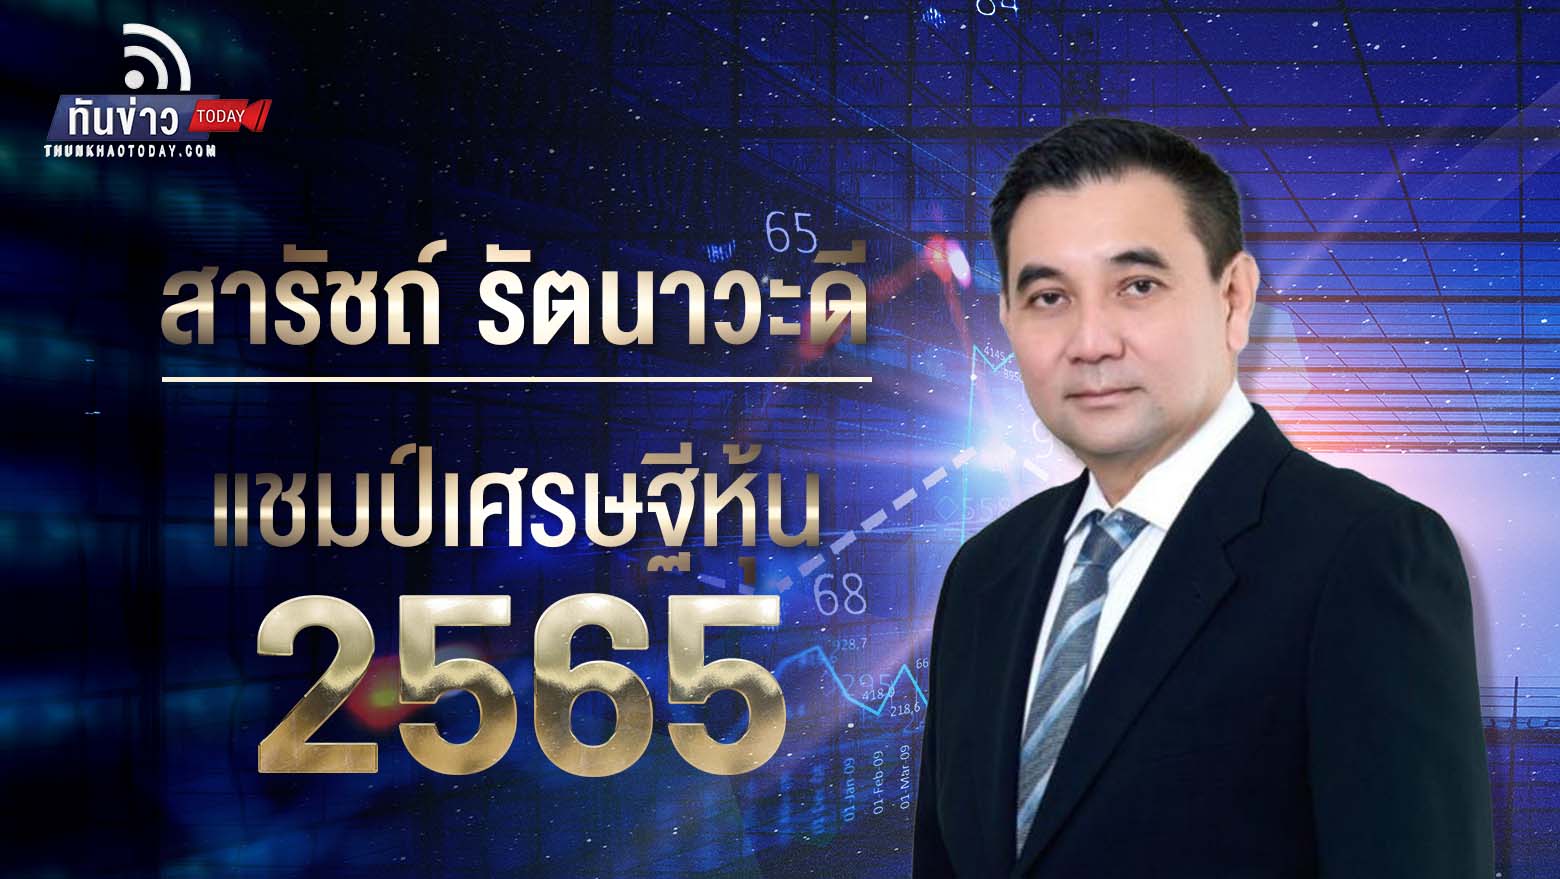 “สารัชถ์ รัตนาวะดี รวย 2.19 แสนล้านบาท ครองแชมป์เศรษฐีหุ้นไทย 4 ปีซ้อน ขณะที่ วิทัย รัตนากร ผู้อำนวยการธนาคารออมสิน ครองตำแหน่งนักการเงินแห่งปี 2565